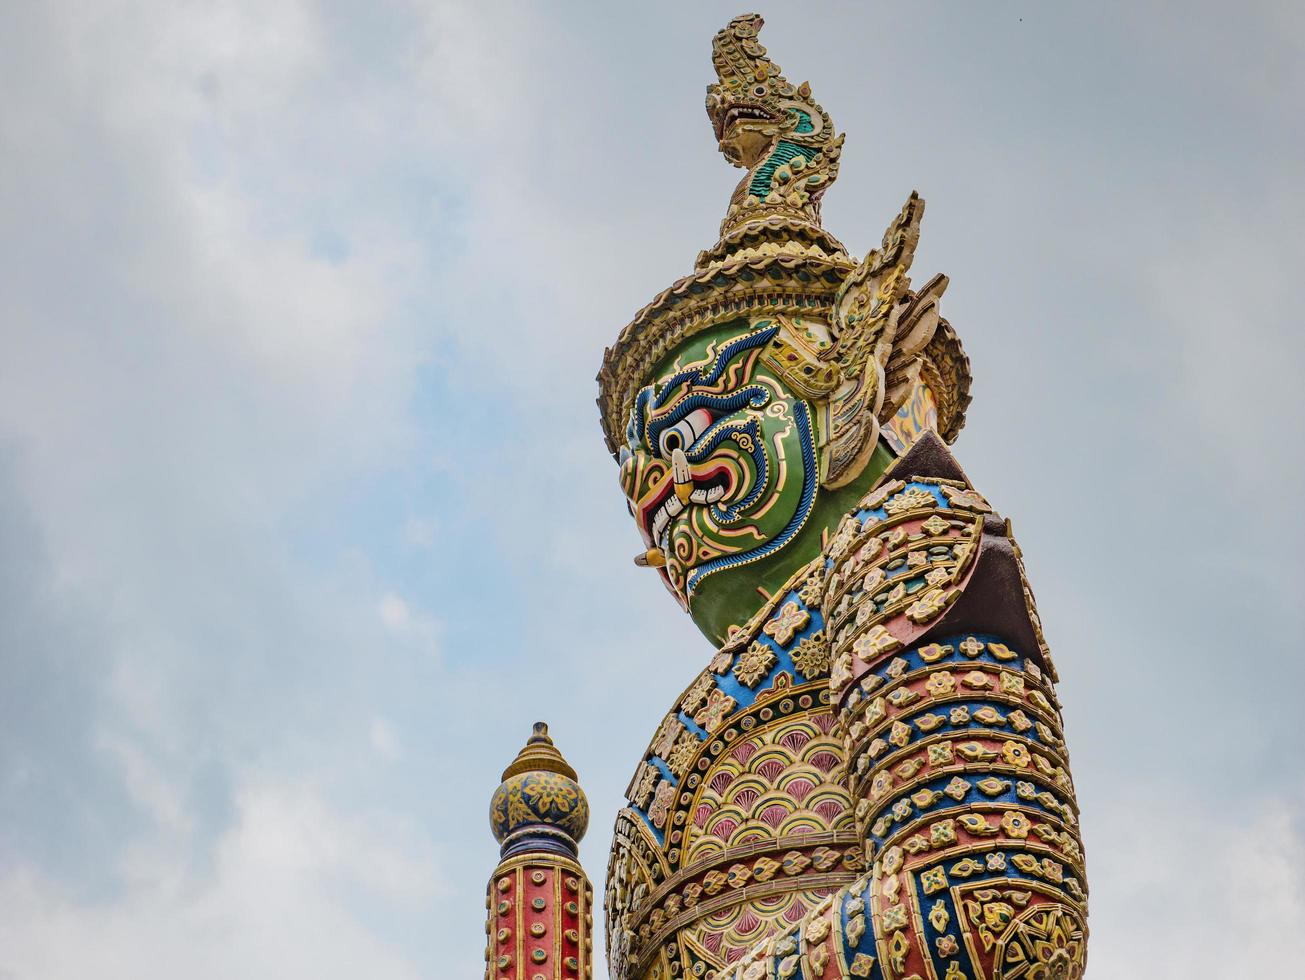 jätte beskyddare av de Port i wat phrakaew tempel bangkok stad thailand, wat phrakeaw tempel är de huvud tempel av bangkok huvudstad av thailand foto